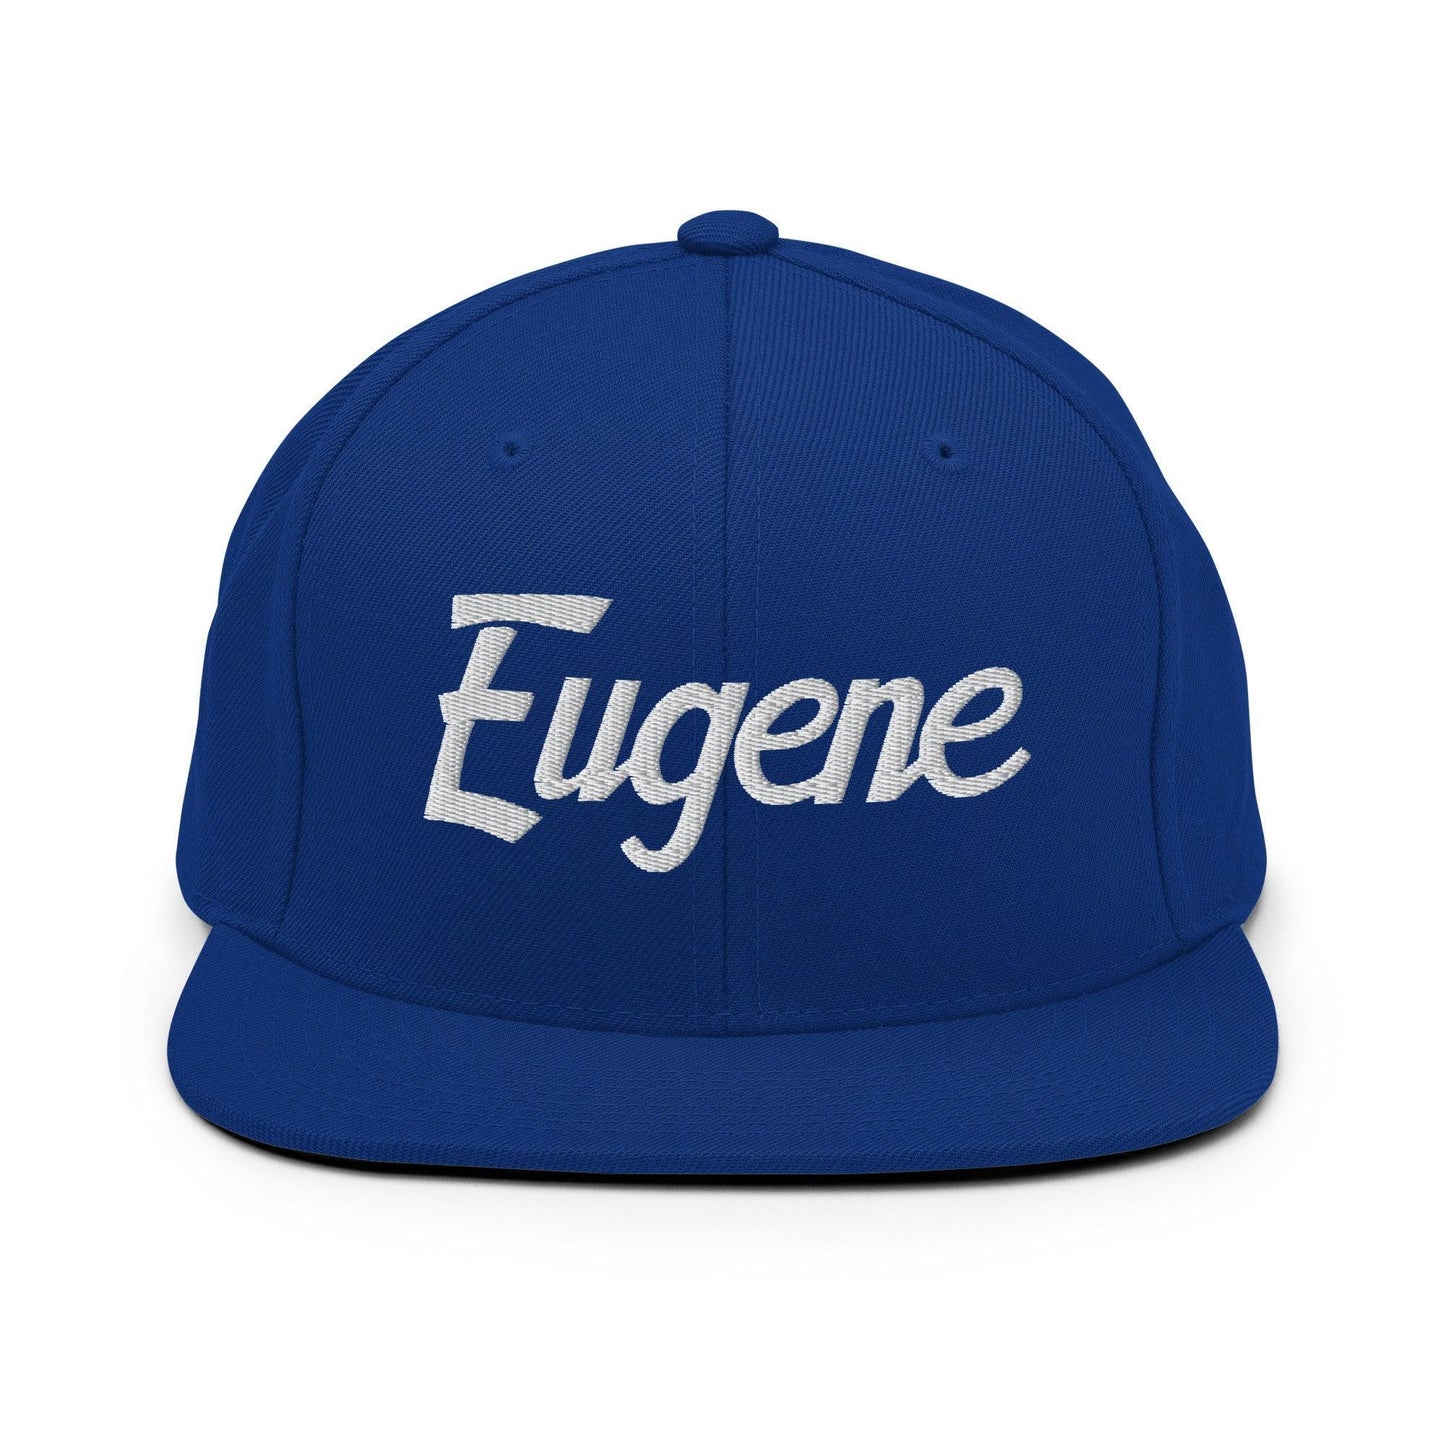 Eugene Script Snapback Hat Royal Blue